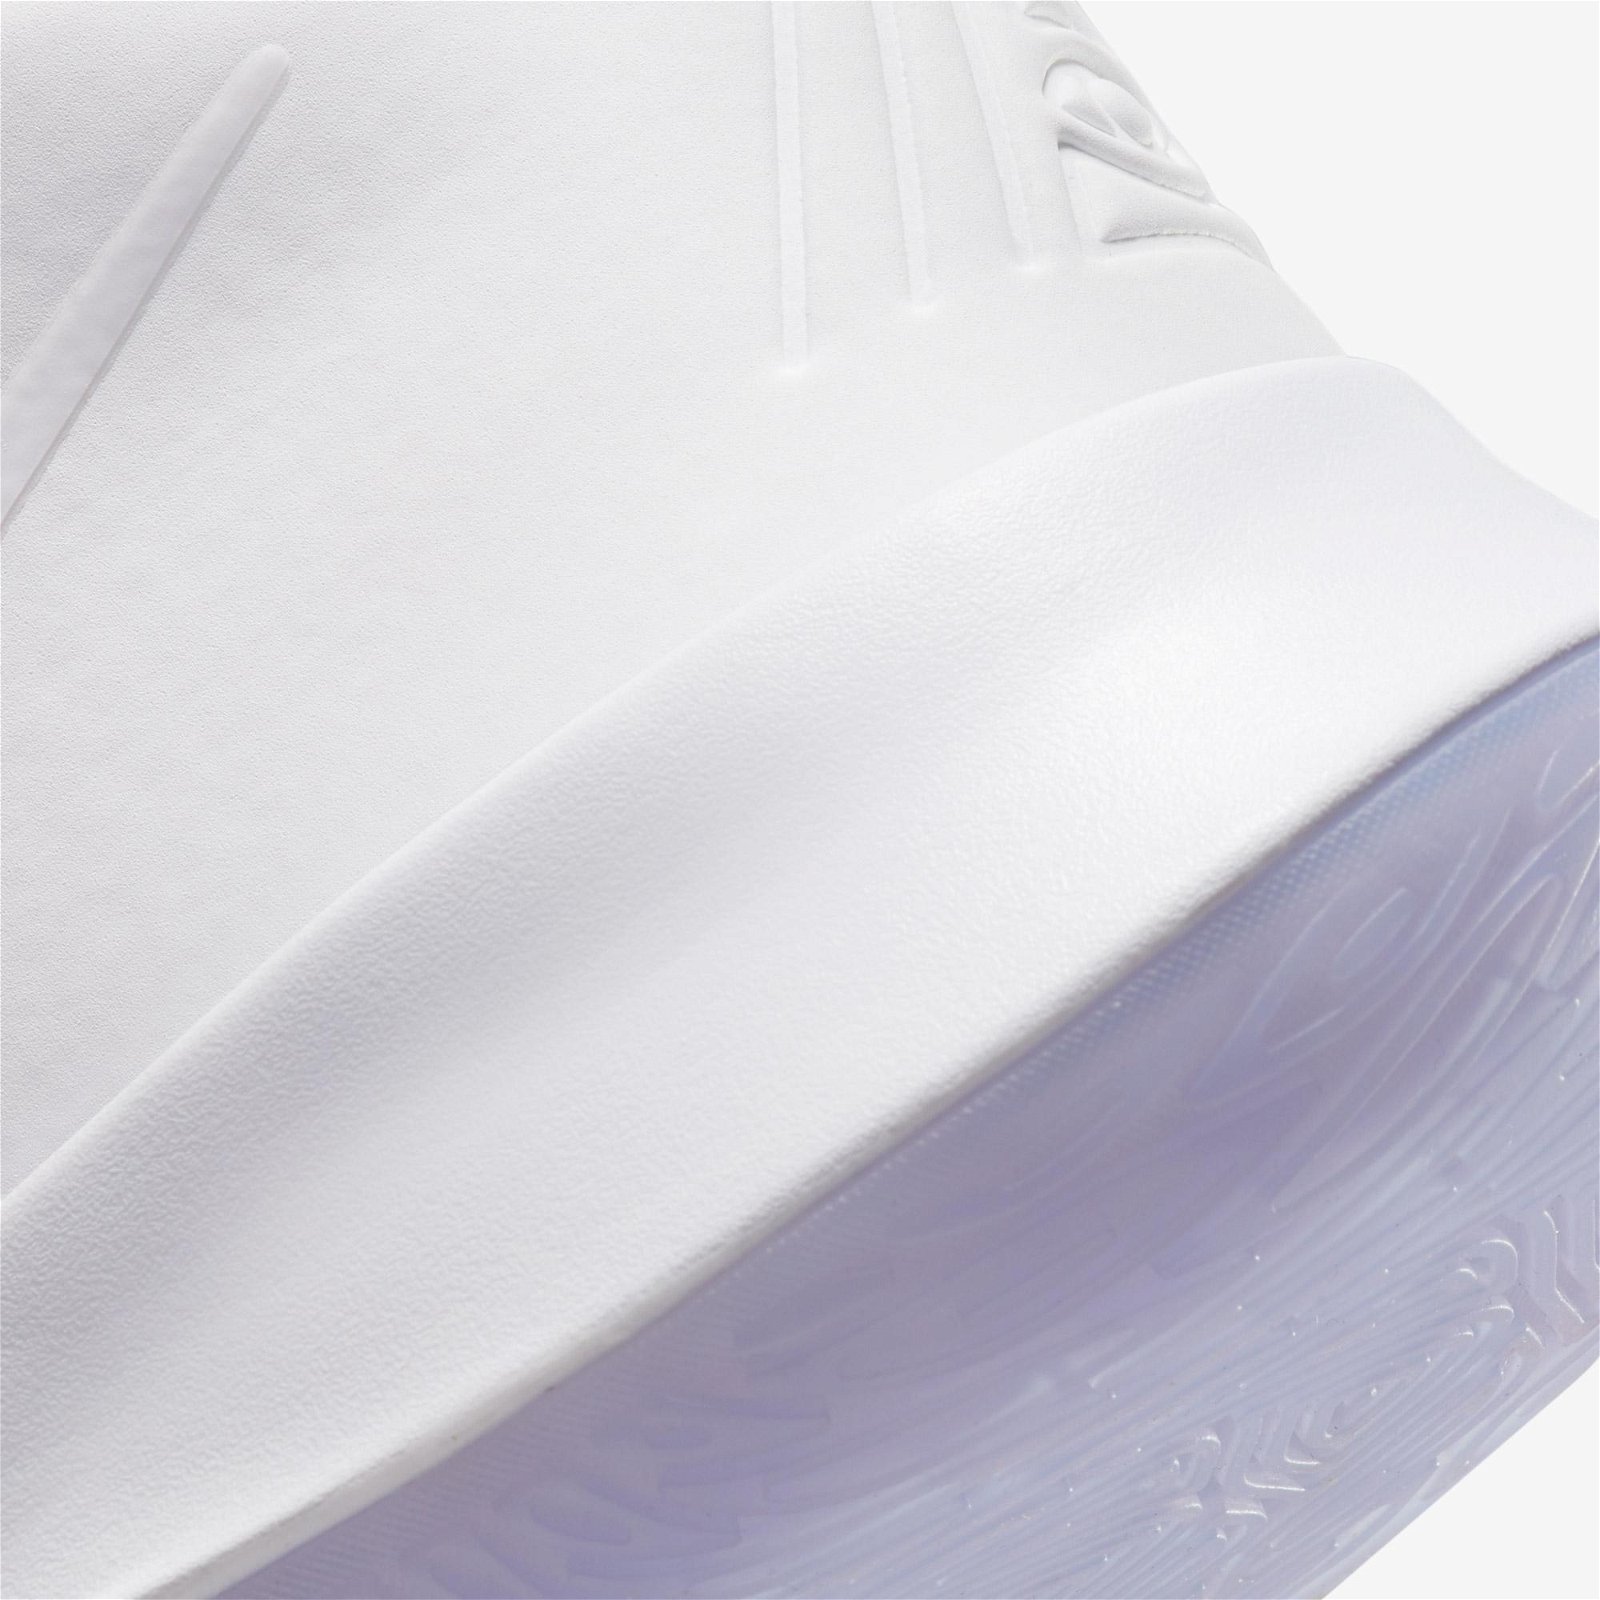 Nike Kyrie Flytrap IV Erkek Beyaz Spor Ayakkabı